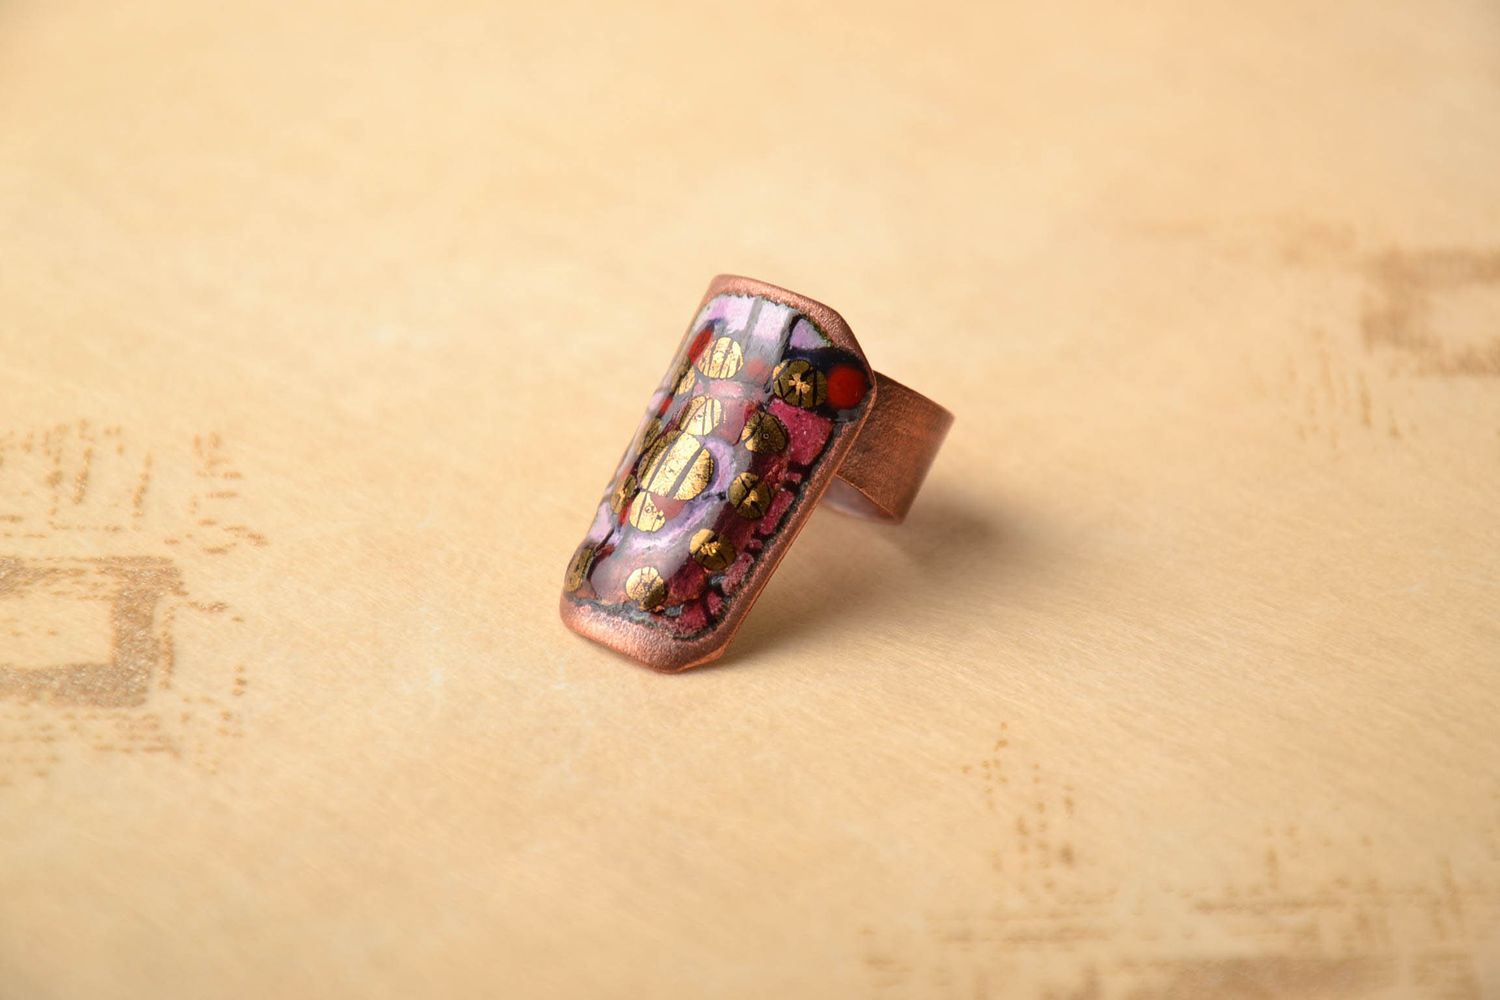 Ring aus Kupfer foto 1